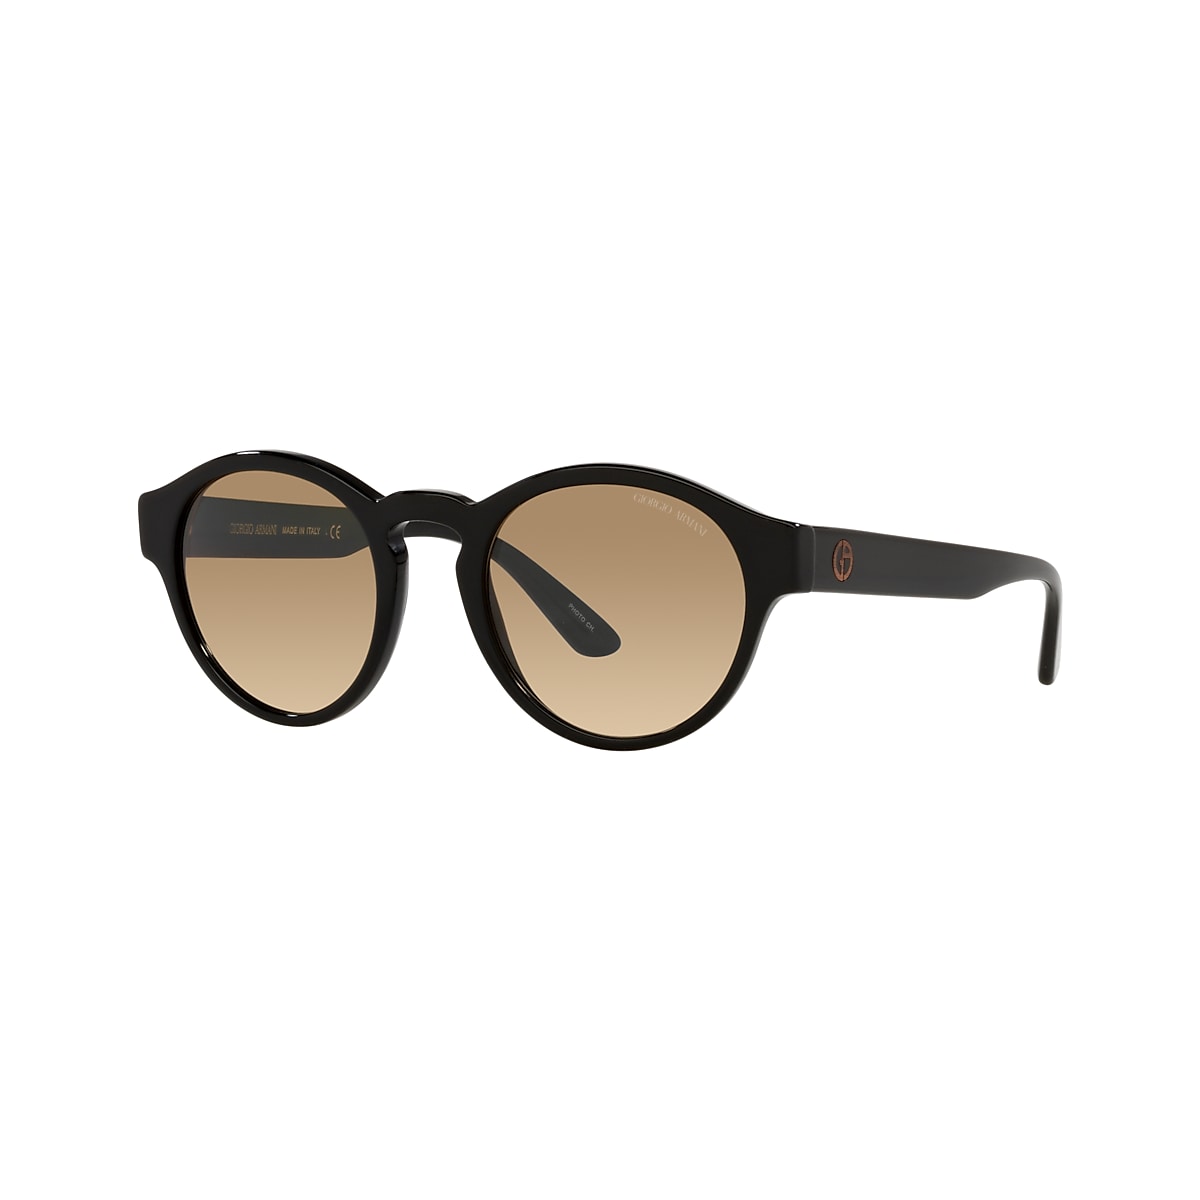 Giorgio Armani AR8146 50 Clear Gradient Brown Photo & Black Sunglasses